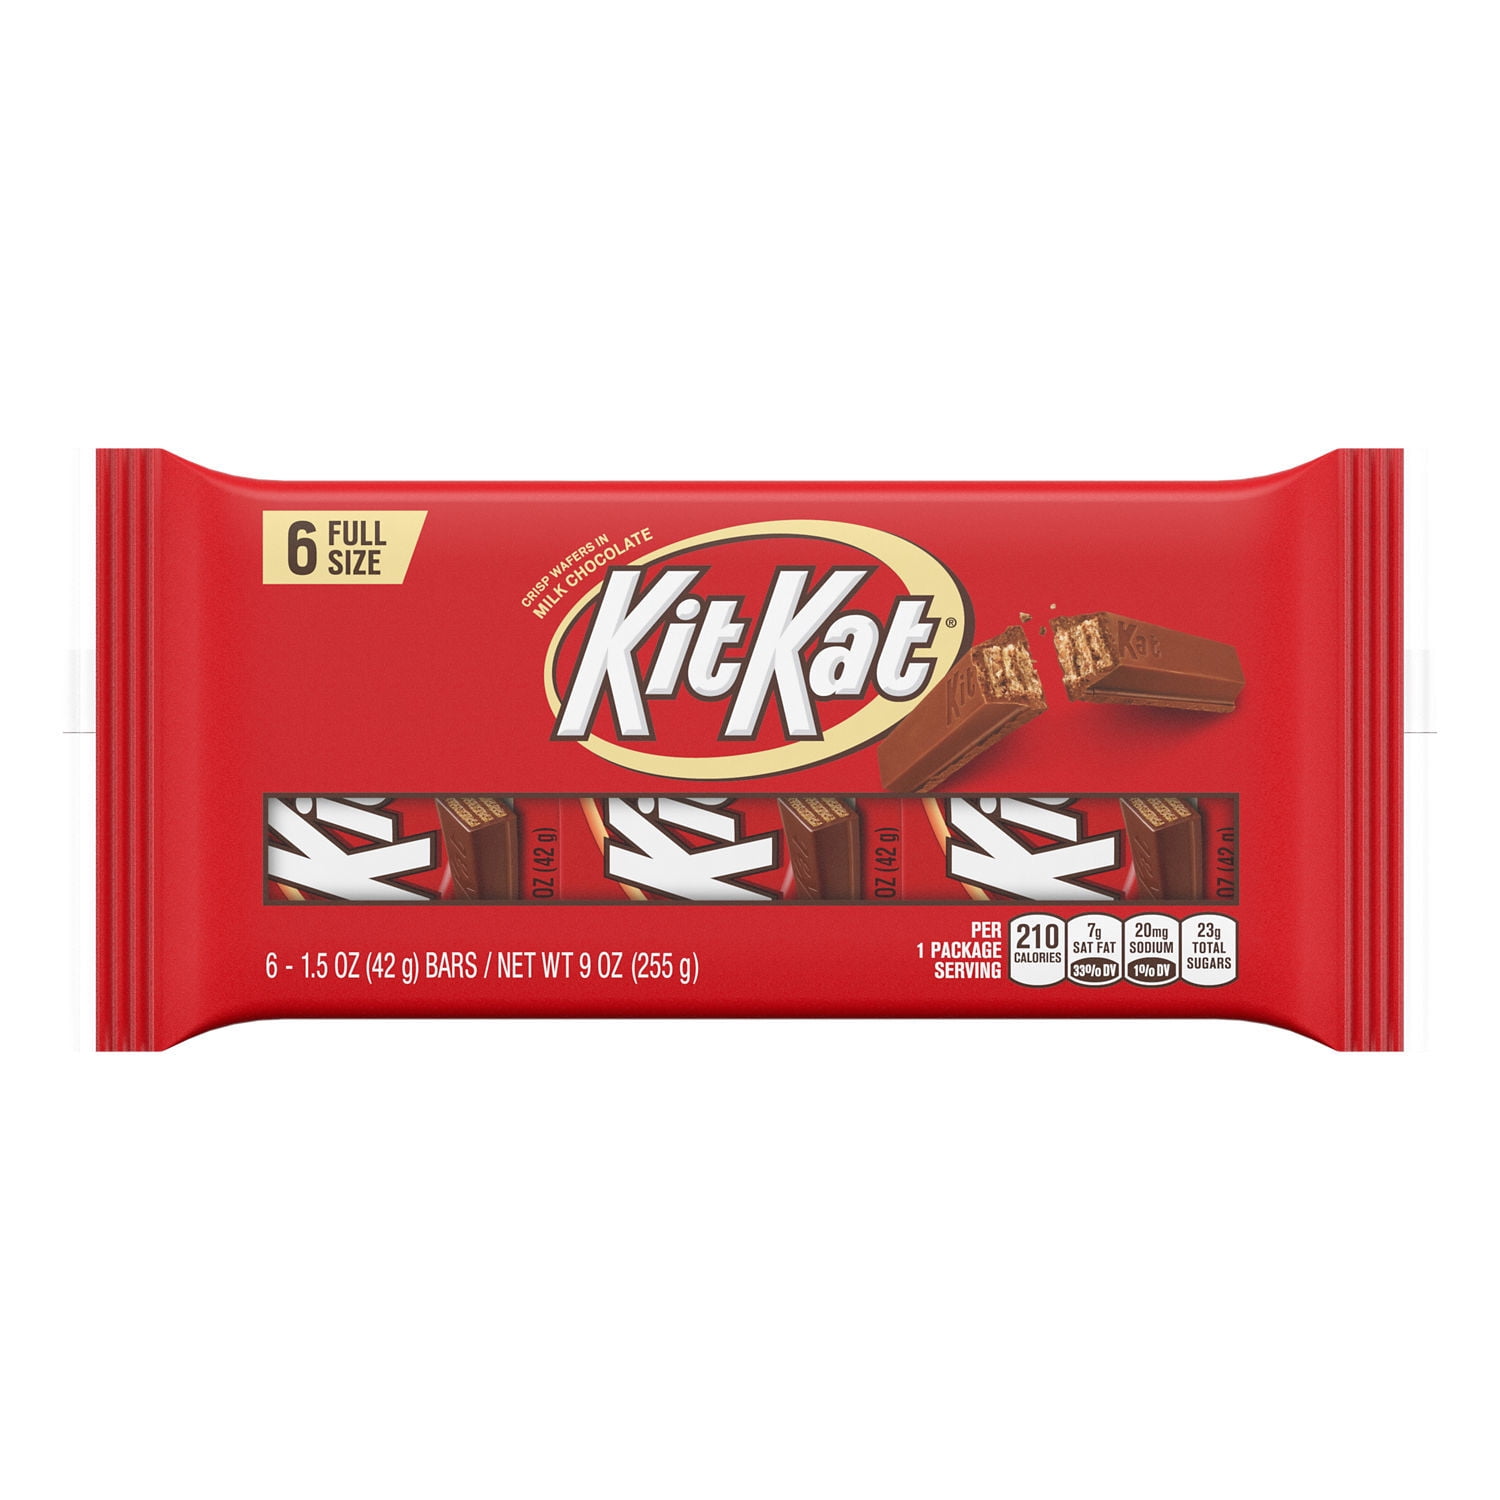 KitKat® Mini Moments 201g Bag